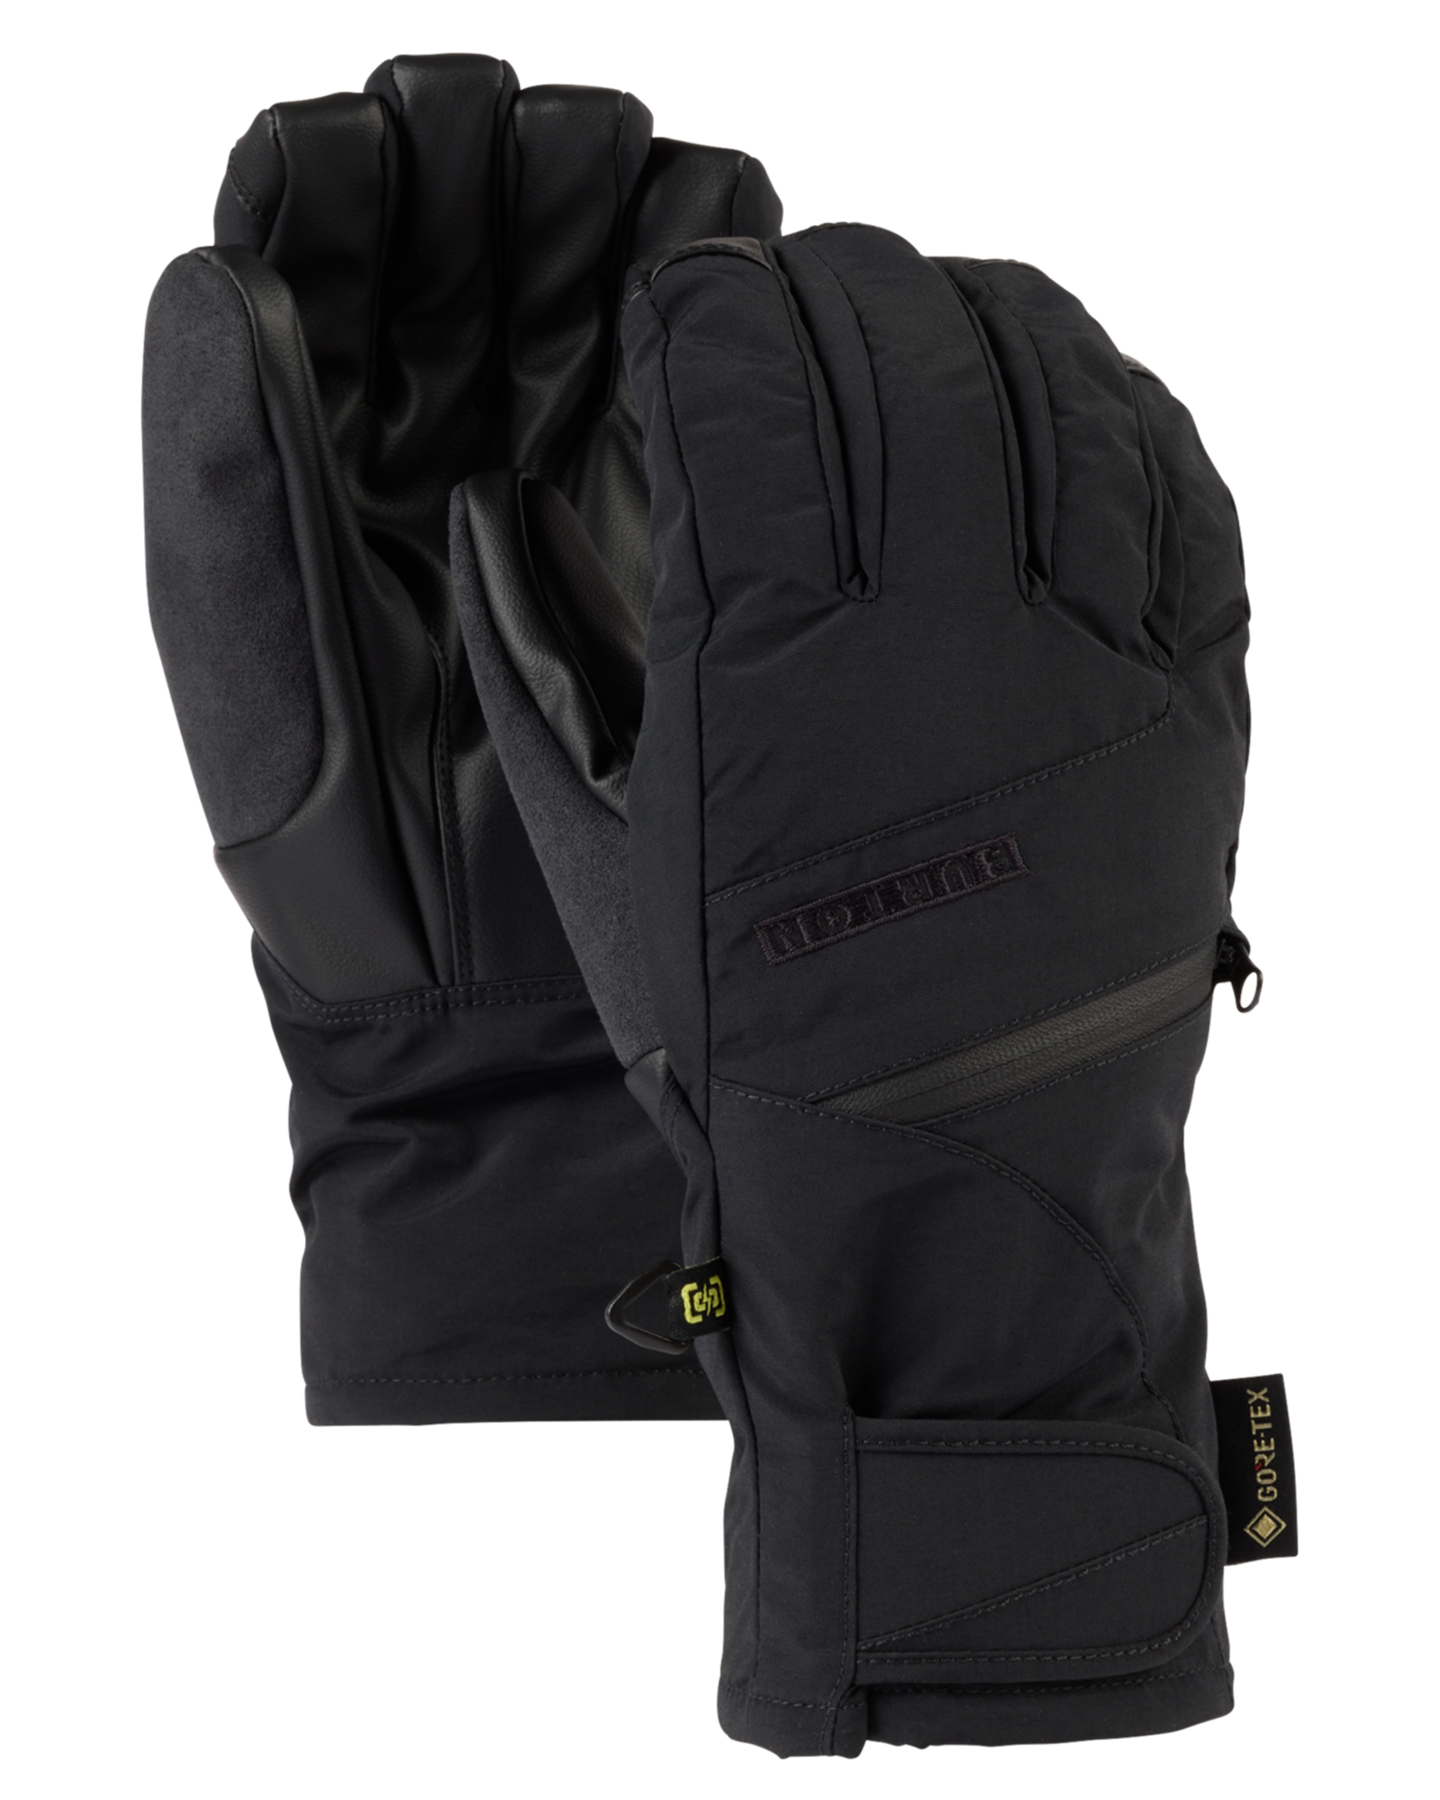 Burton Women's Gore-Tex Under Snow Gloves - True Black Women's Snow Gloves & Mittens - SnowSkiersWarehouse